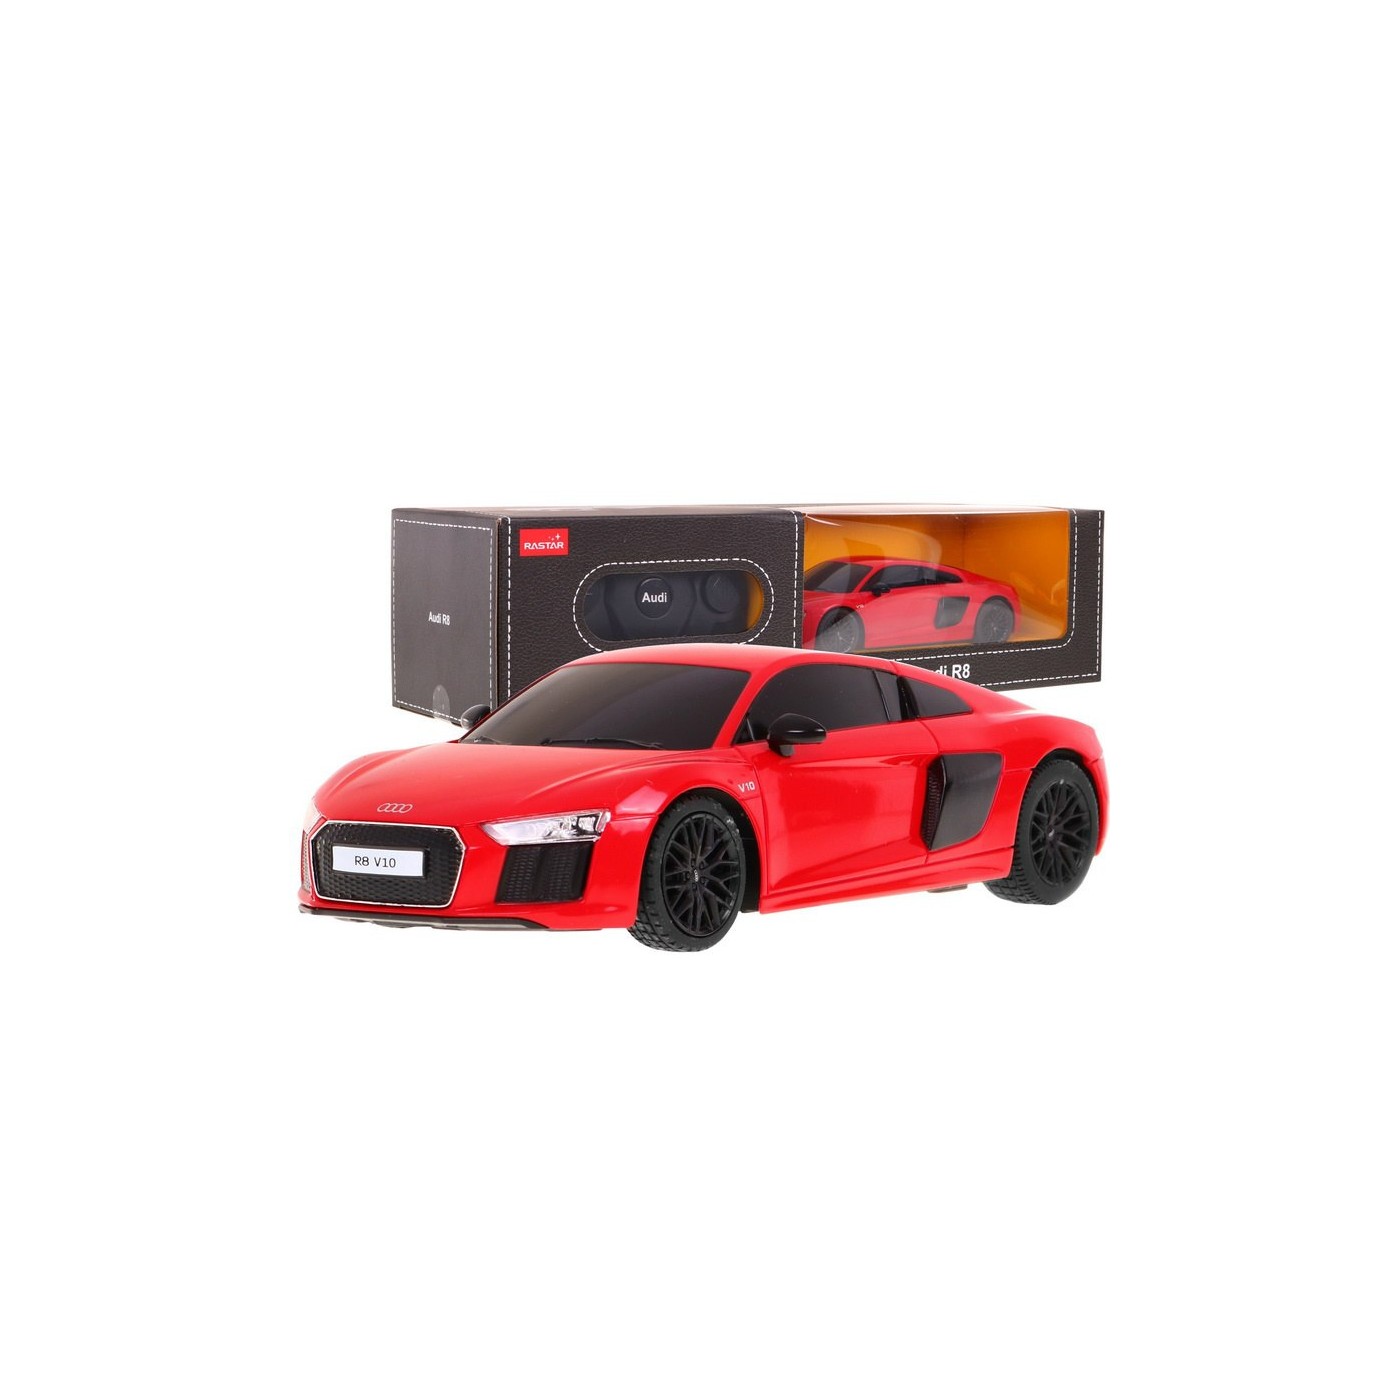 R/C toy car Audi R8 Red 1:24 RASTAR